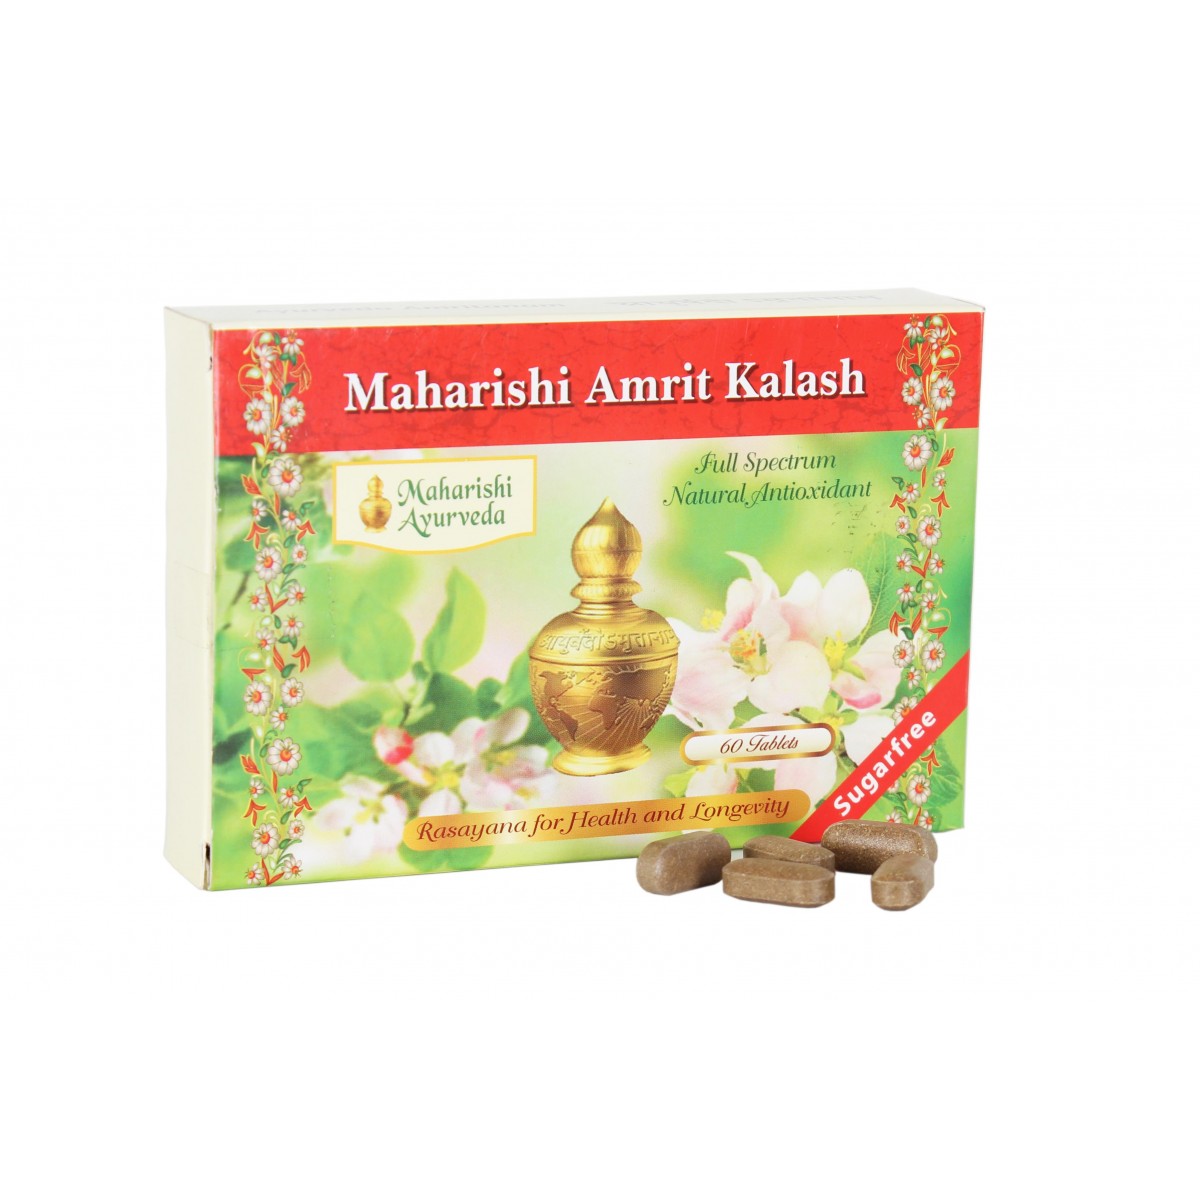 Buy Maharish Amrit Kalash 4 Sugar Free at Best Price Online